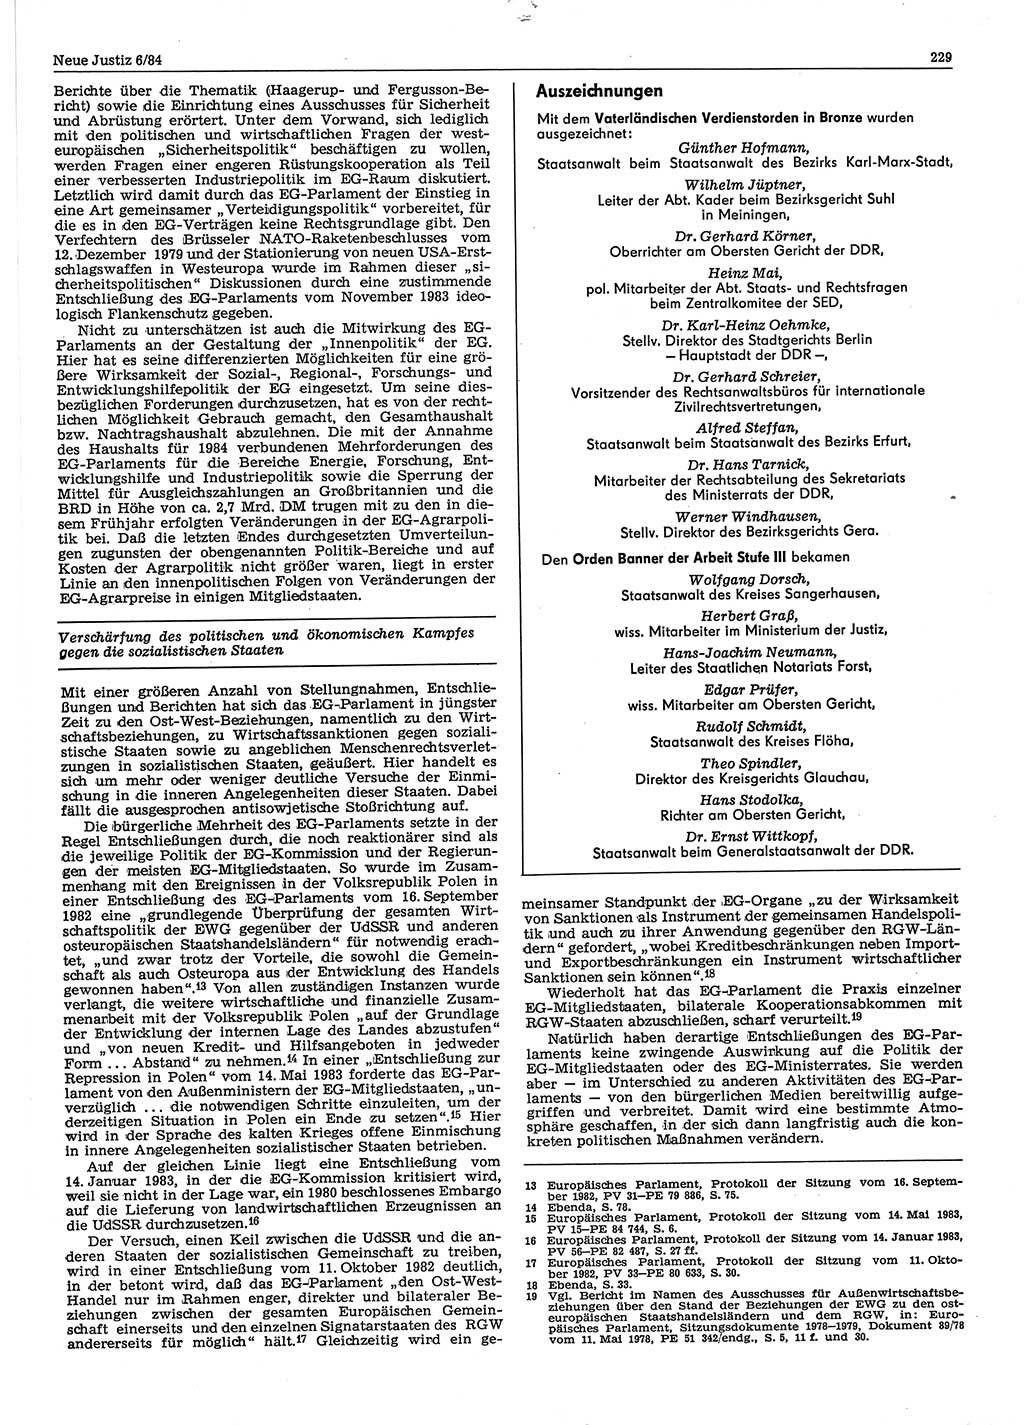 Neue Justiz (NJ), Zeitschrift für sozialistisches Recht und Gesetzlichkeit [Deutsche Demokratische Republik (DDR)], 38. Jahrgang 1984, Seite 229 (NJ DDR 1984, S. 229)